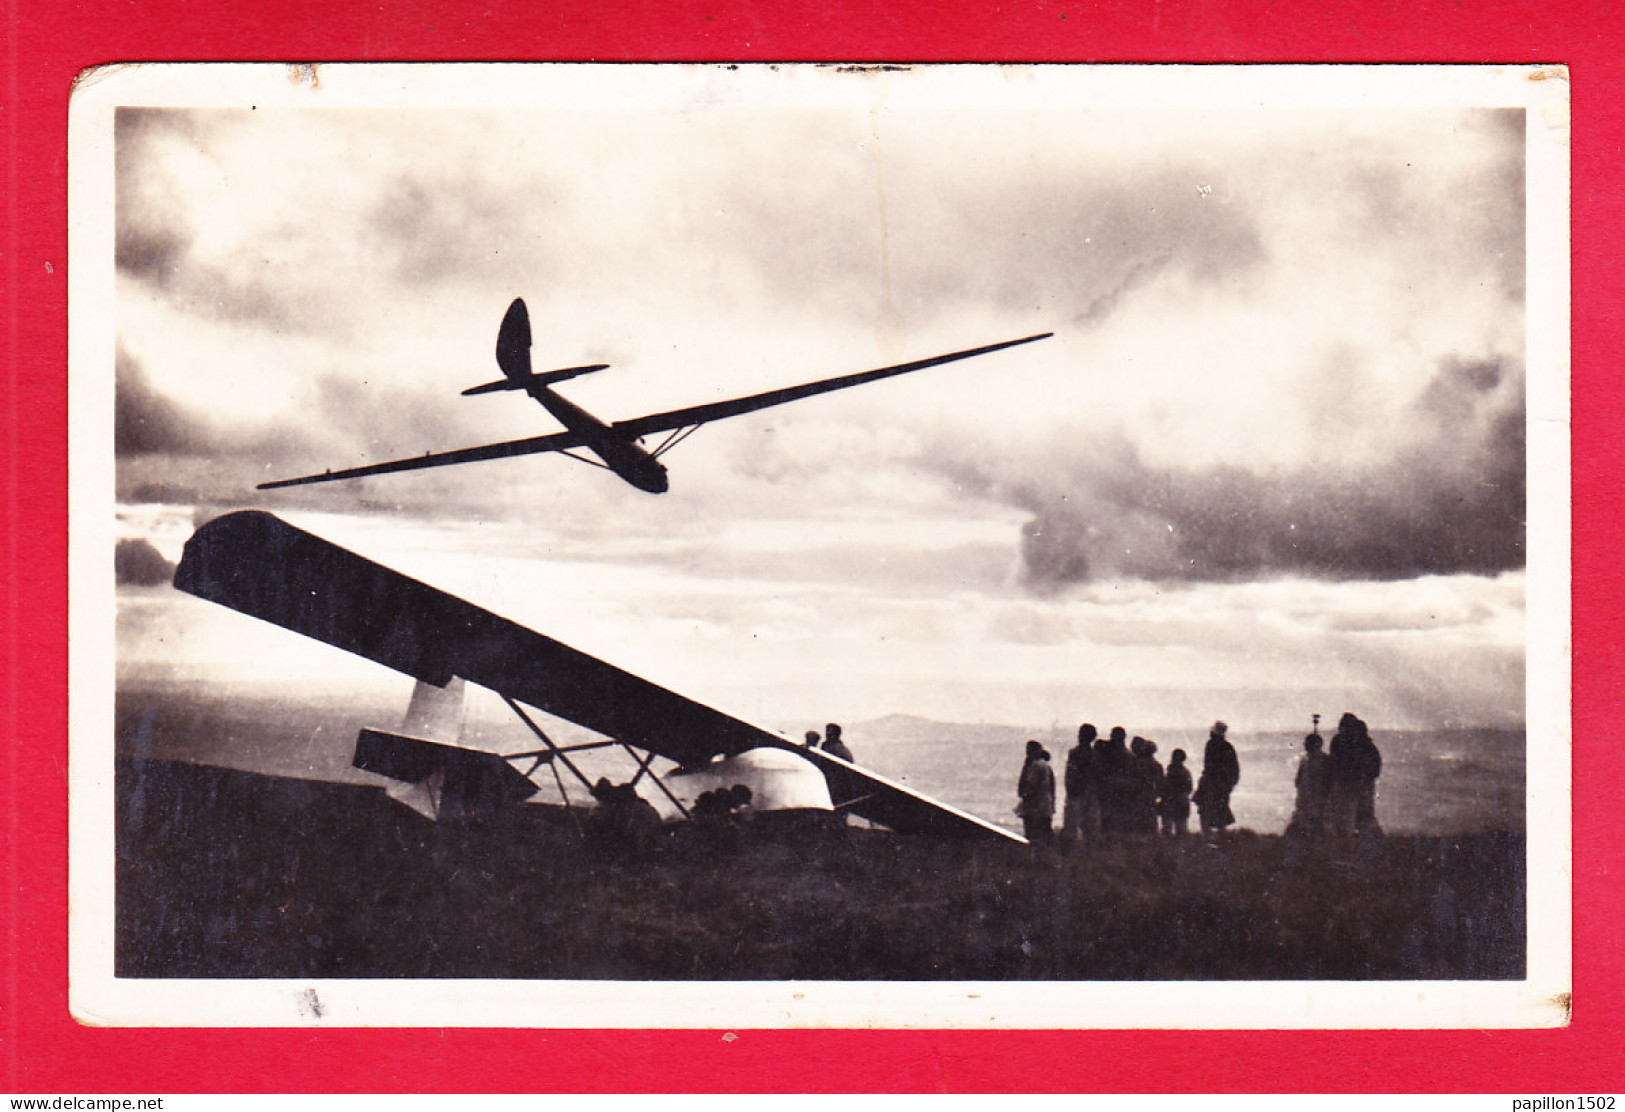 Aviation-265A17  Le Vol à Voile à La Banne D'Ordanche, Un Virage De Kronfeld - 1946-....: Moderne